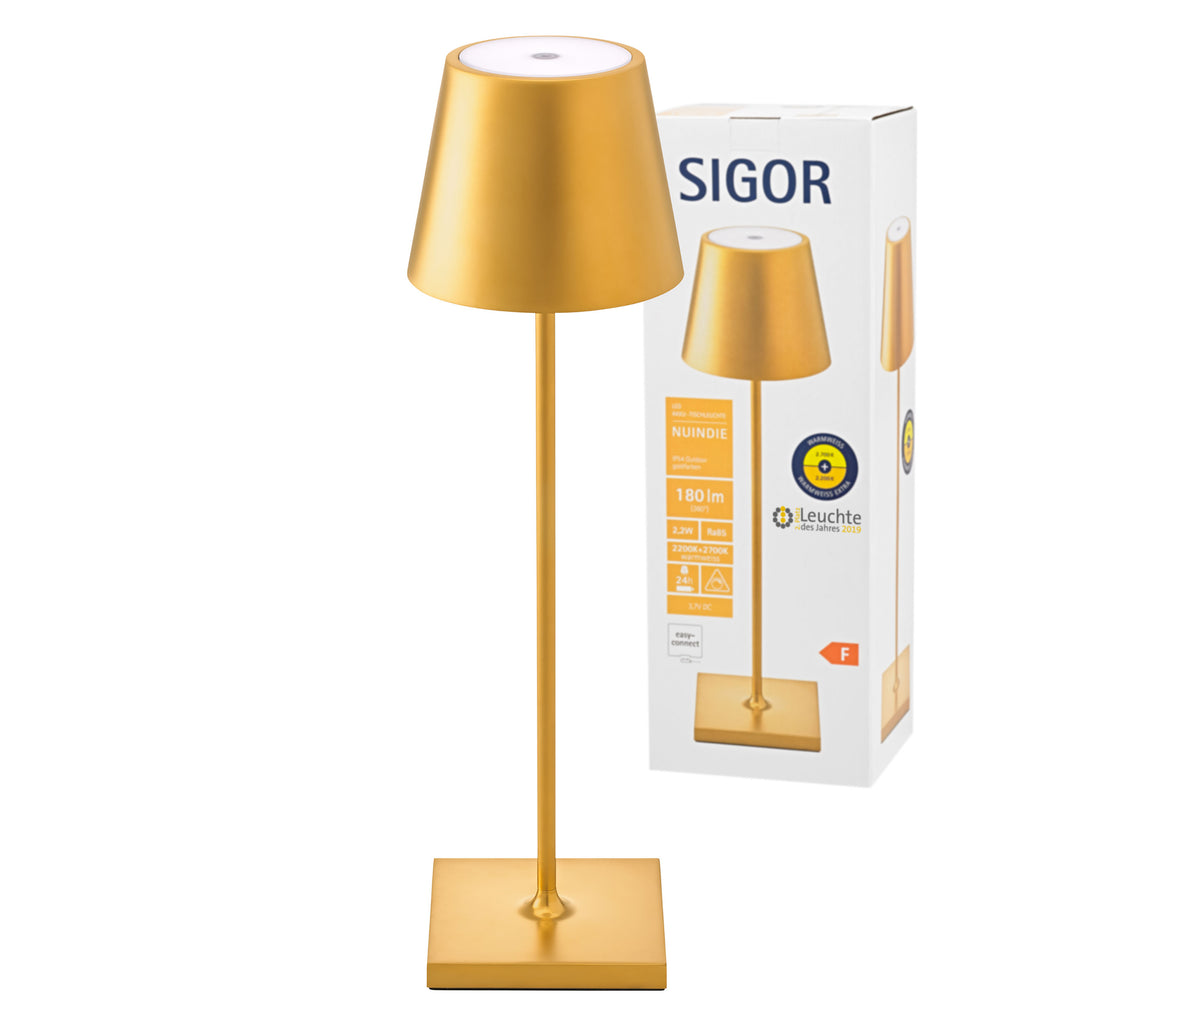 Sigor Nuindie Akku-Tischleuchte LED gold